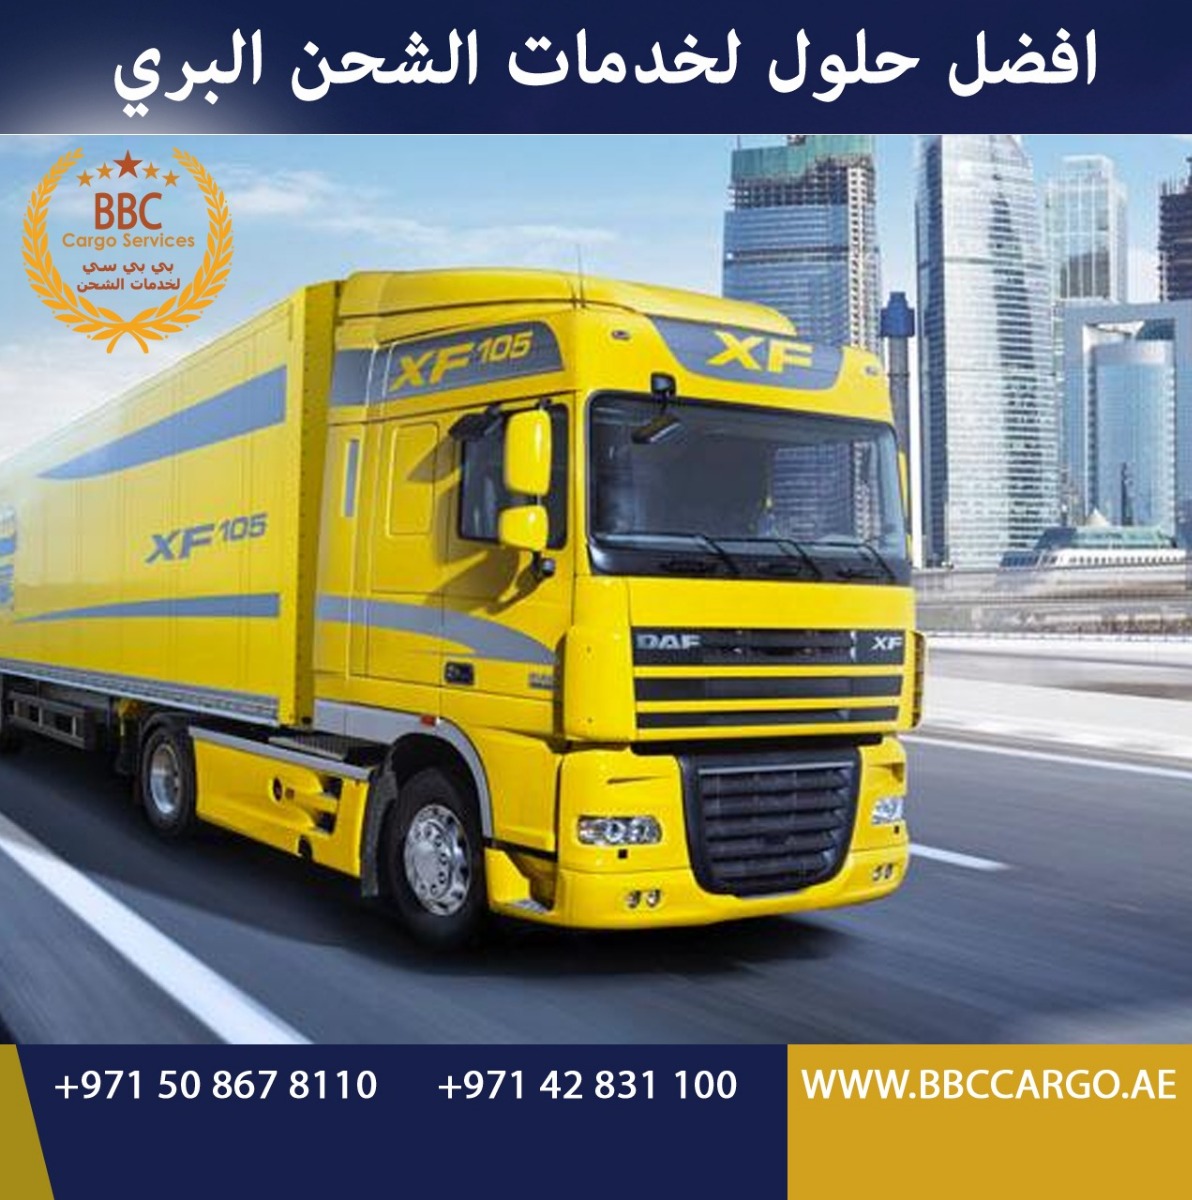 الشركة الرائدة efcargo في نقل الشحنات الثقيلة المملكة العربية السعودية الامارات  عمان الامارات  